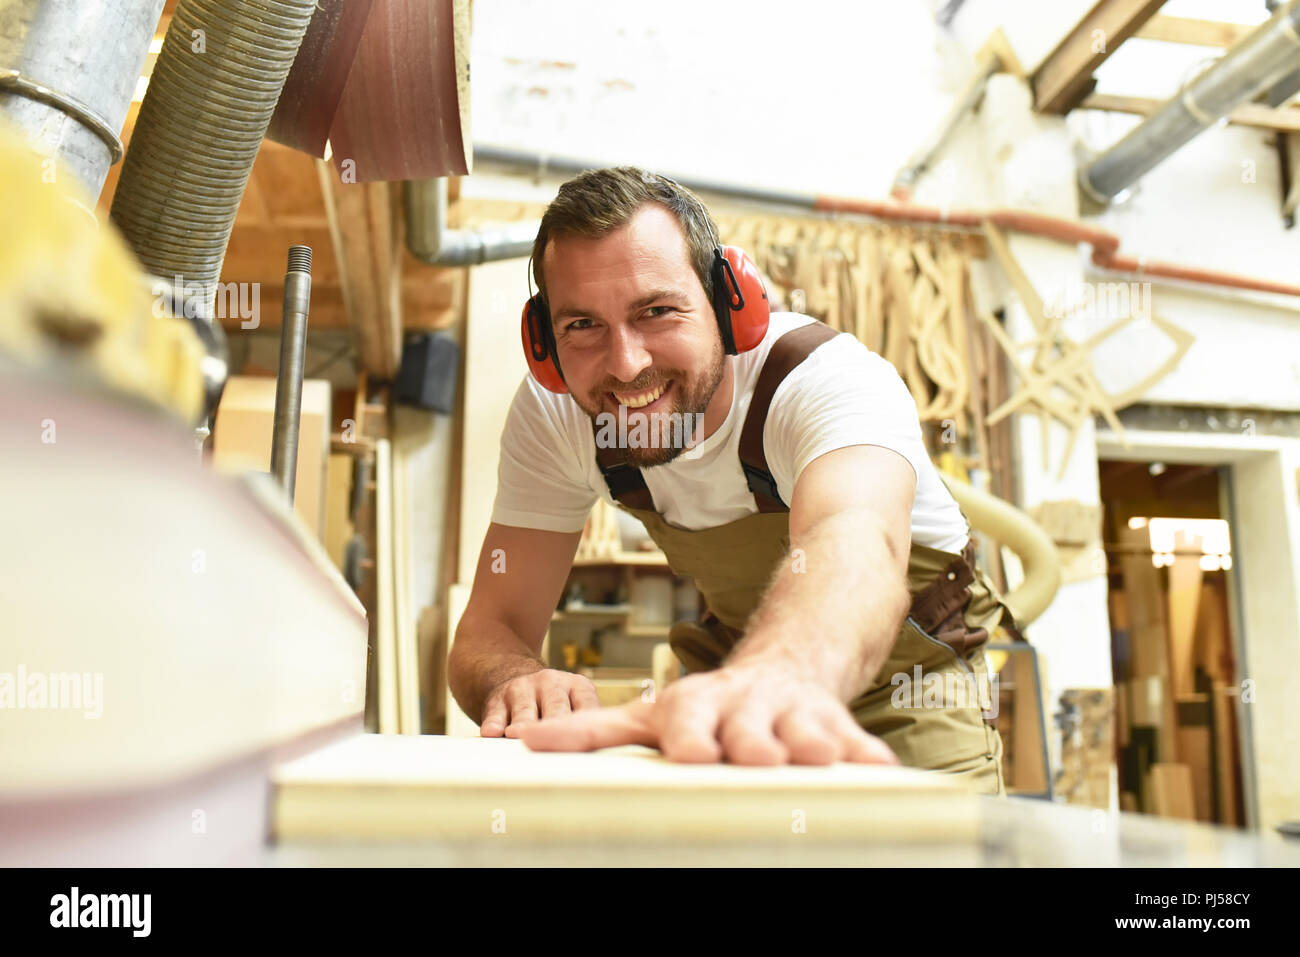 Carpenter lavora in una falegnameria - officina per la lavorazione del legno e di sezionatura Foto Stock